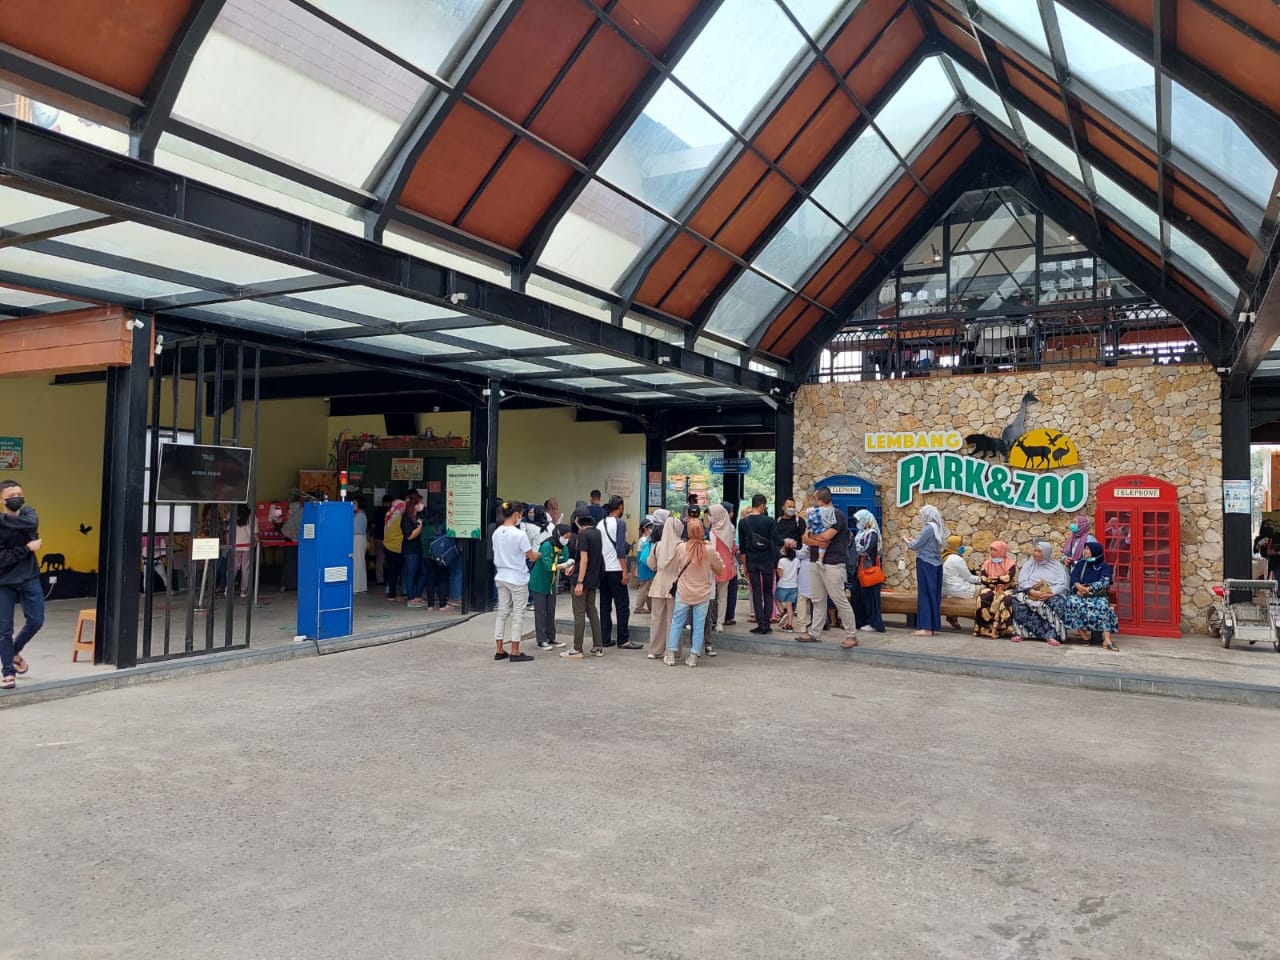 Pengunjung berjibun di depan pintu masuk objek wisata Lembang Park and Zoo, KBB